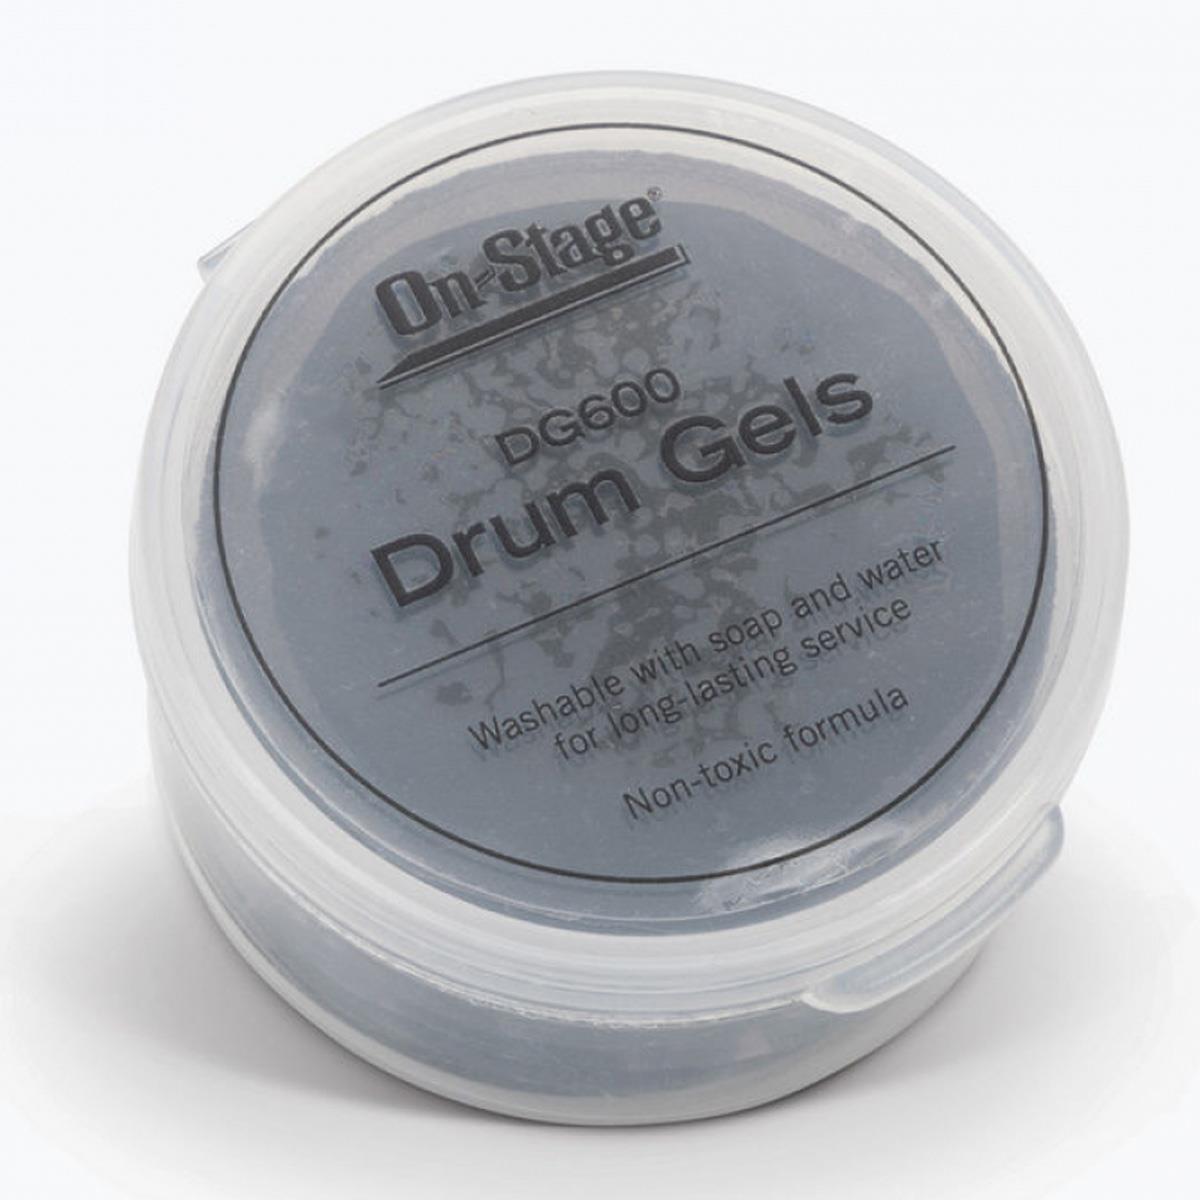 Image of On-Stage DG600 Drum Gels